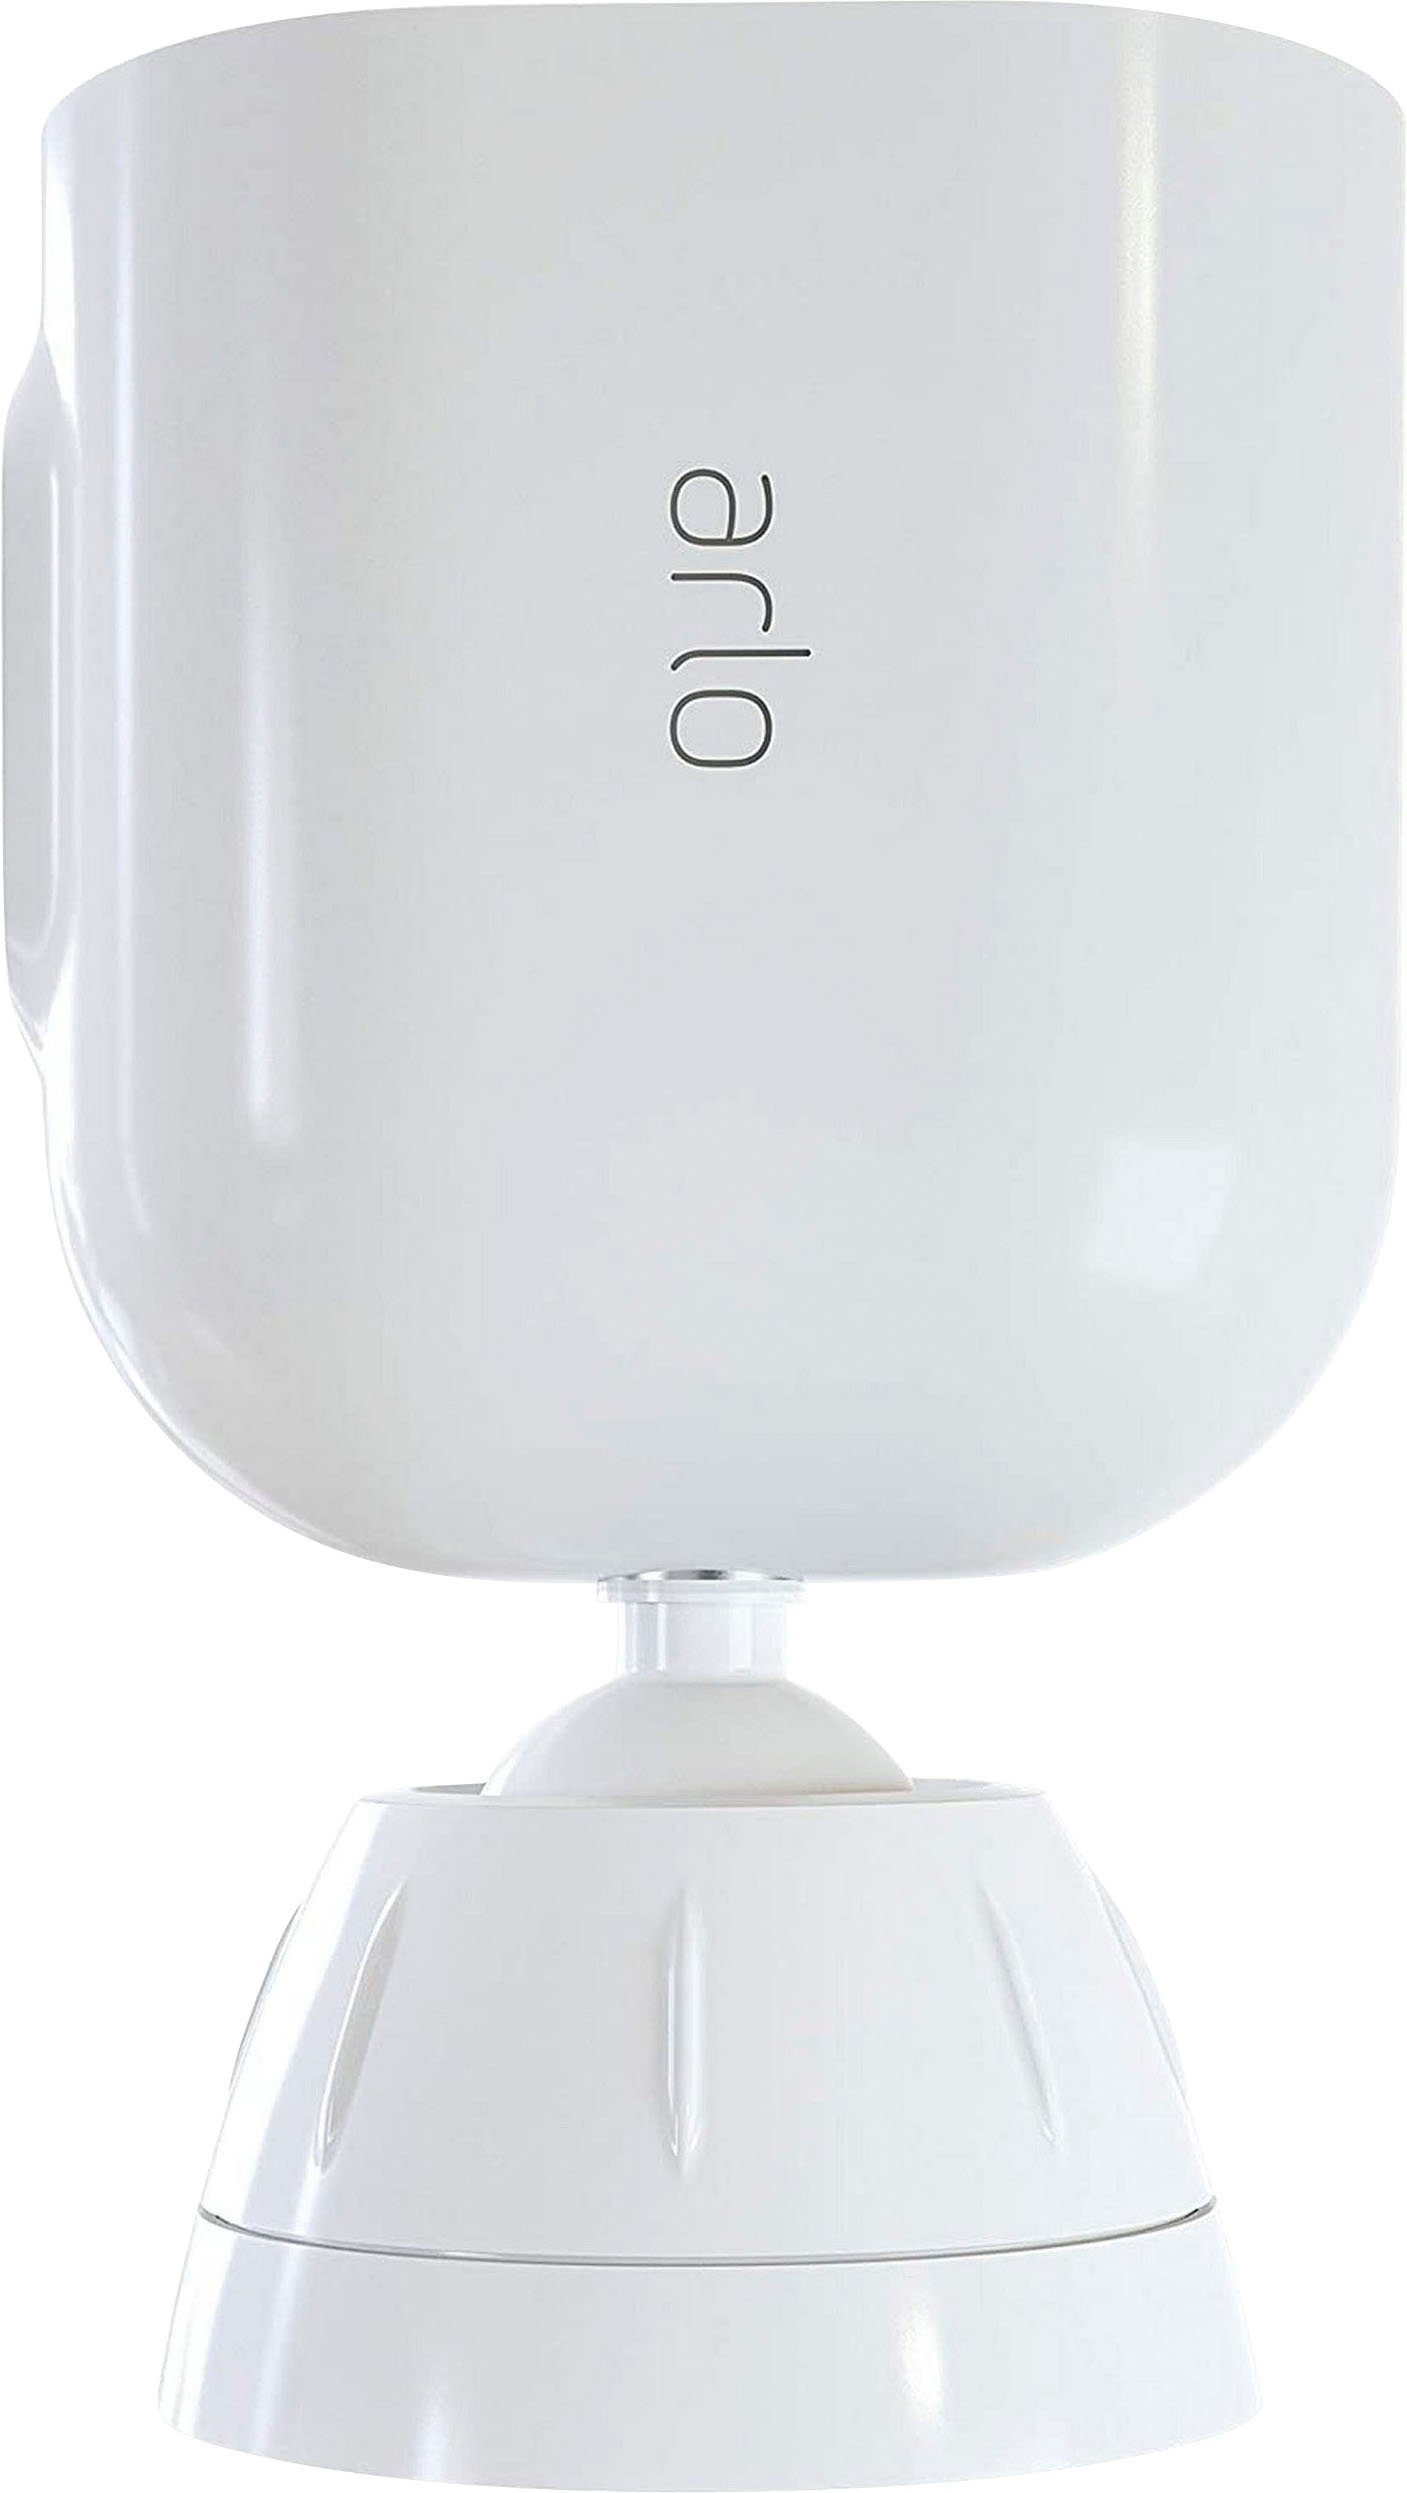 ARLO Total Security Halterung geeignet für Ultra & Pro3 Überwachungskameras Kamerahalterung